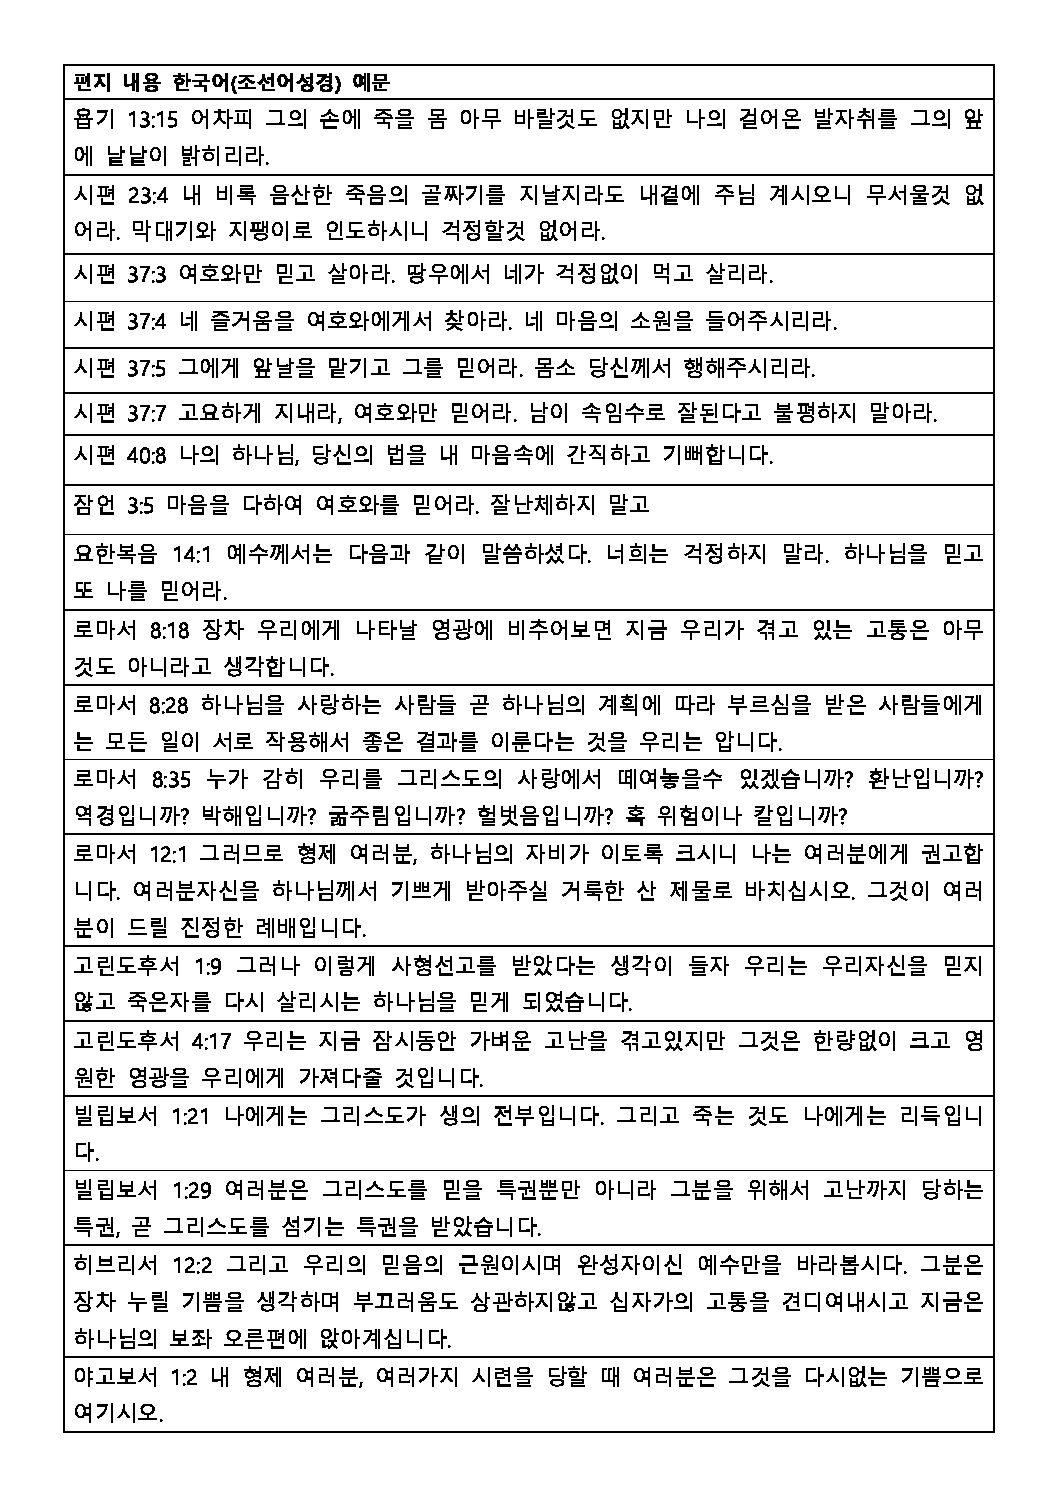 NK_Letter Contents_Korean